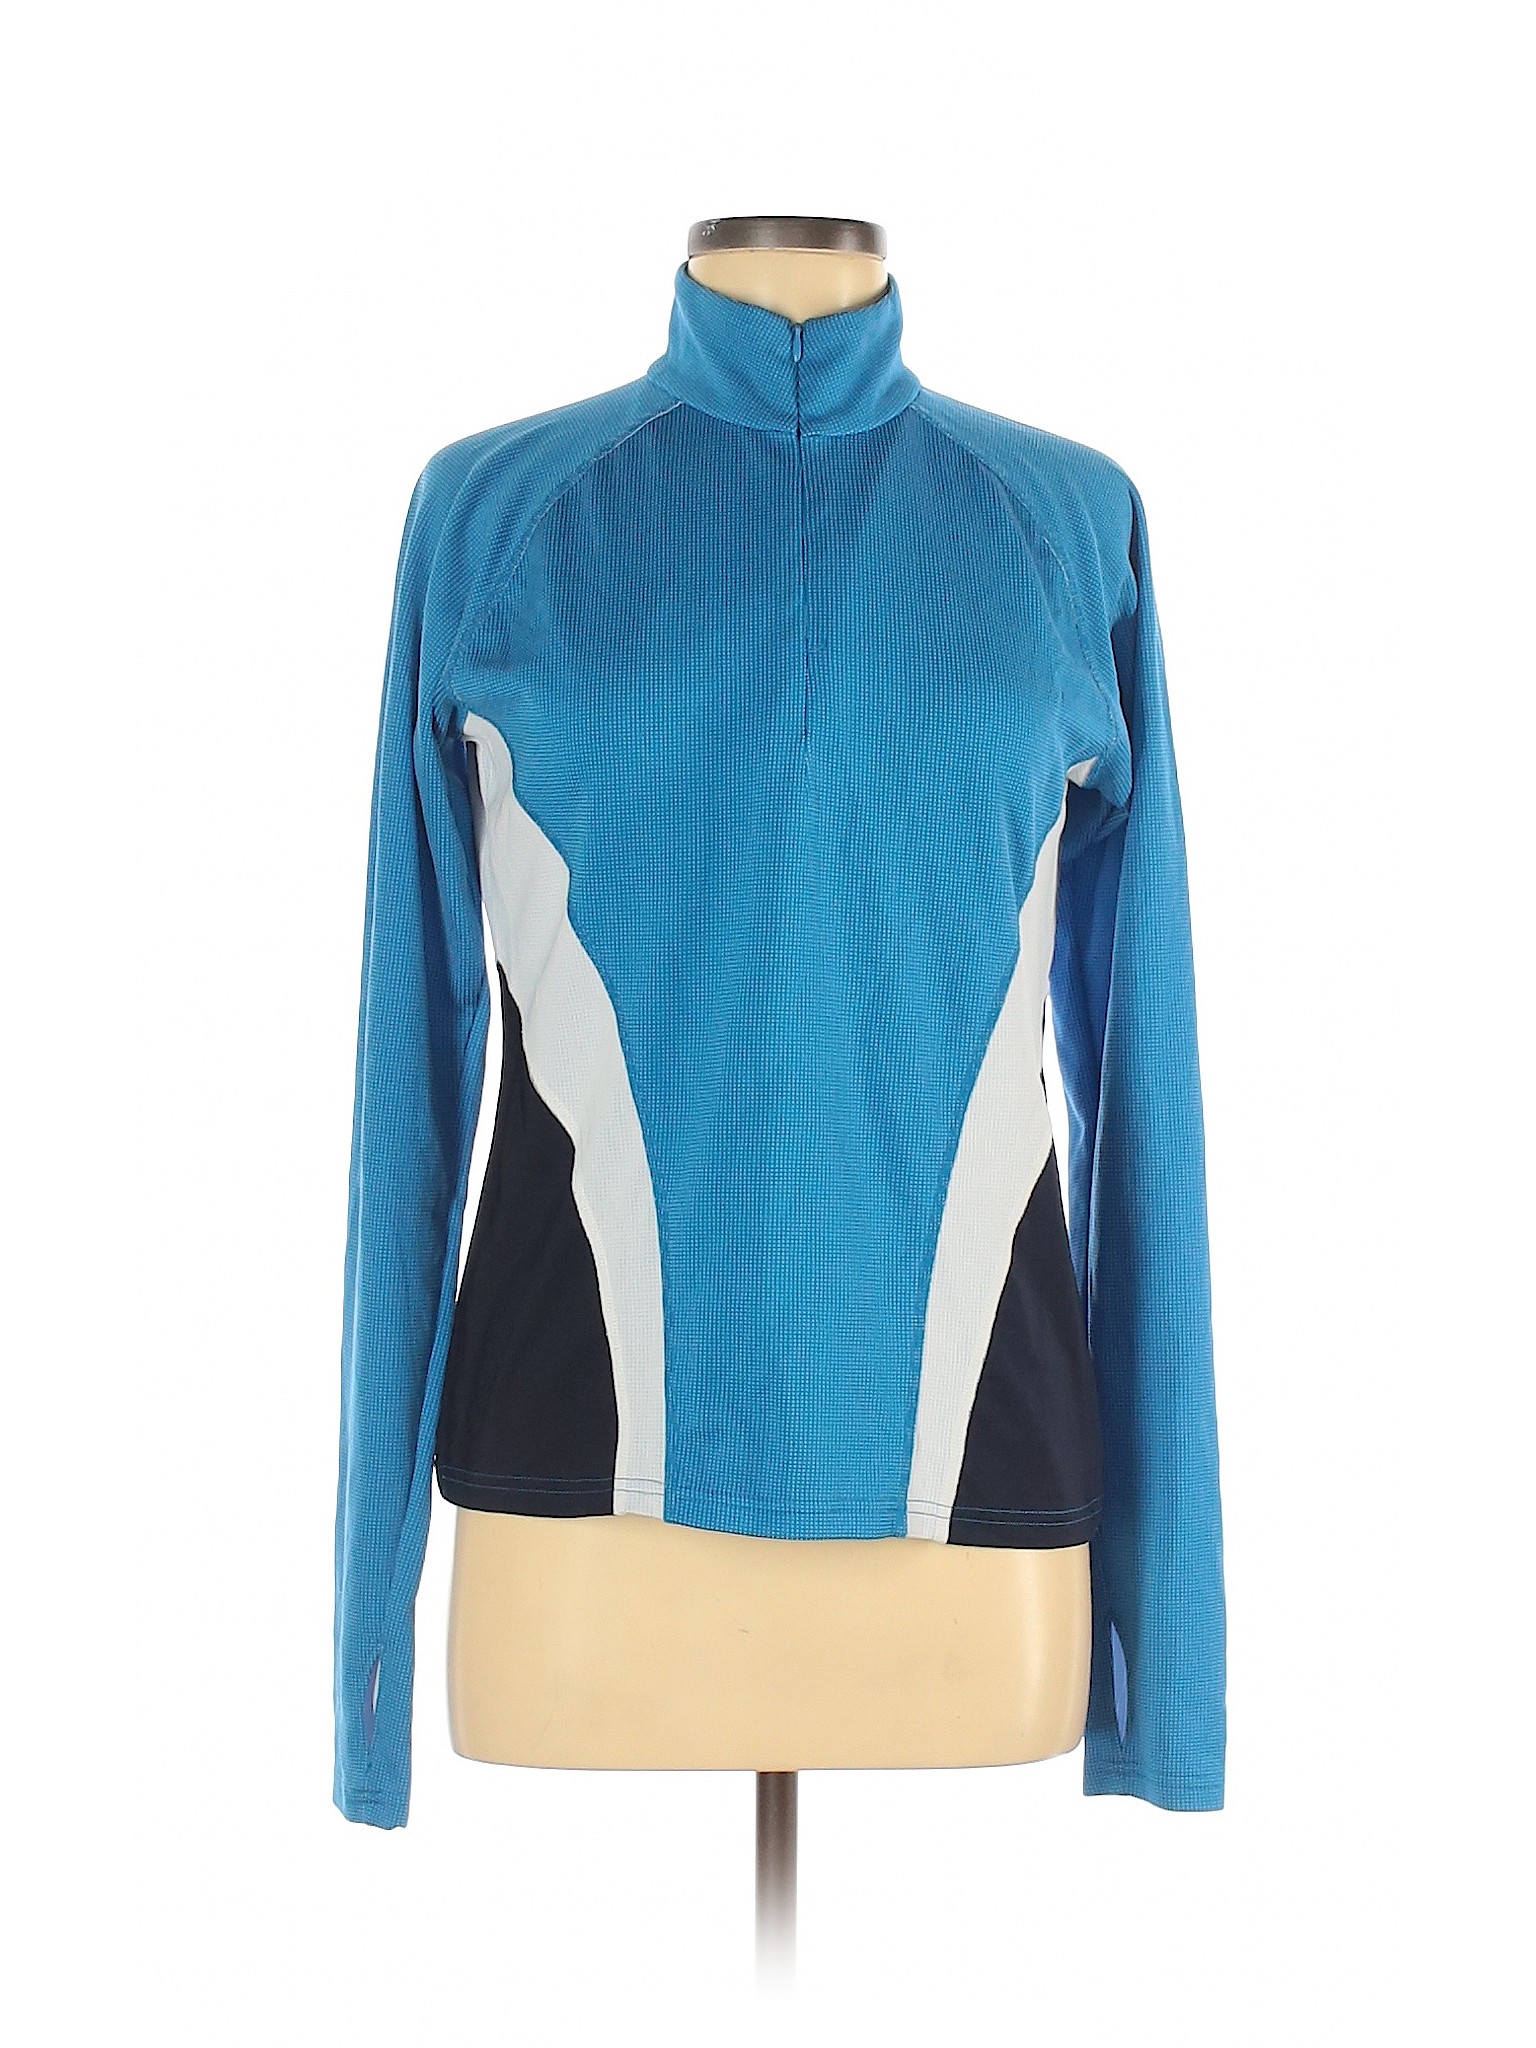 NordicTrack Women Blue Track Jacket M | eBay